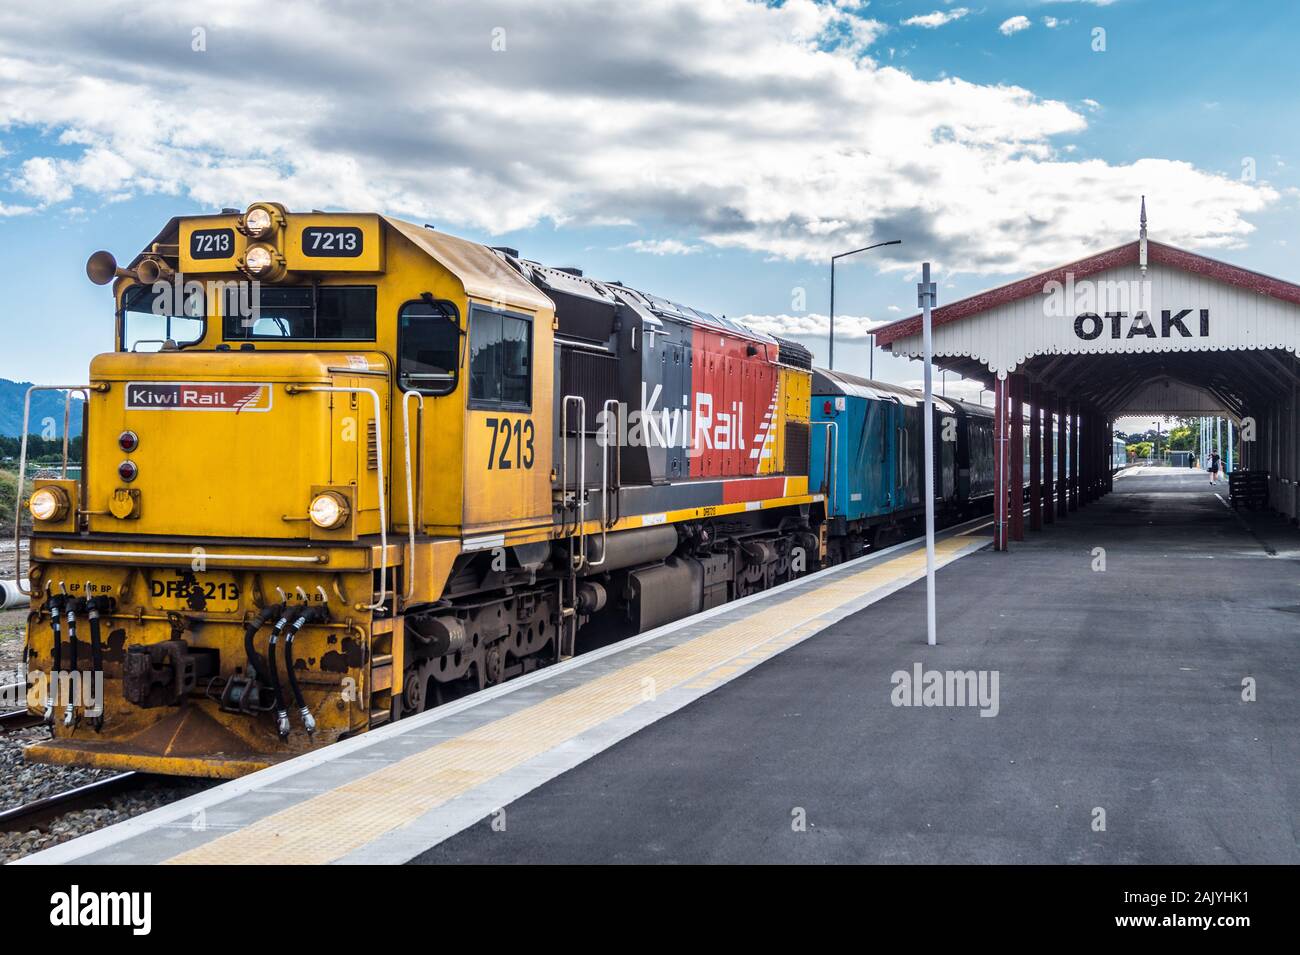 DF locomotiva classe n. 7213, Capitale il collegamento a lunga distanza commuter train alla stazione Ōtaki, Isola del nord, Nuova Zelanda Foto Stock